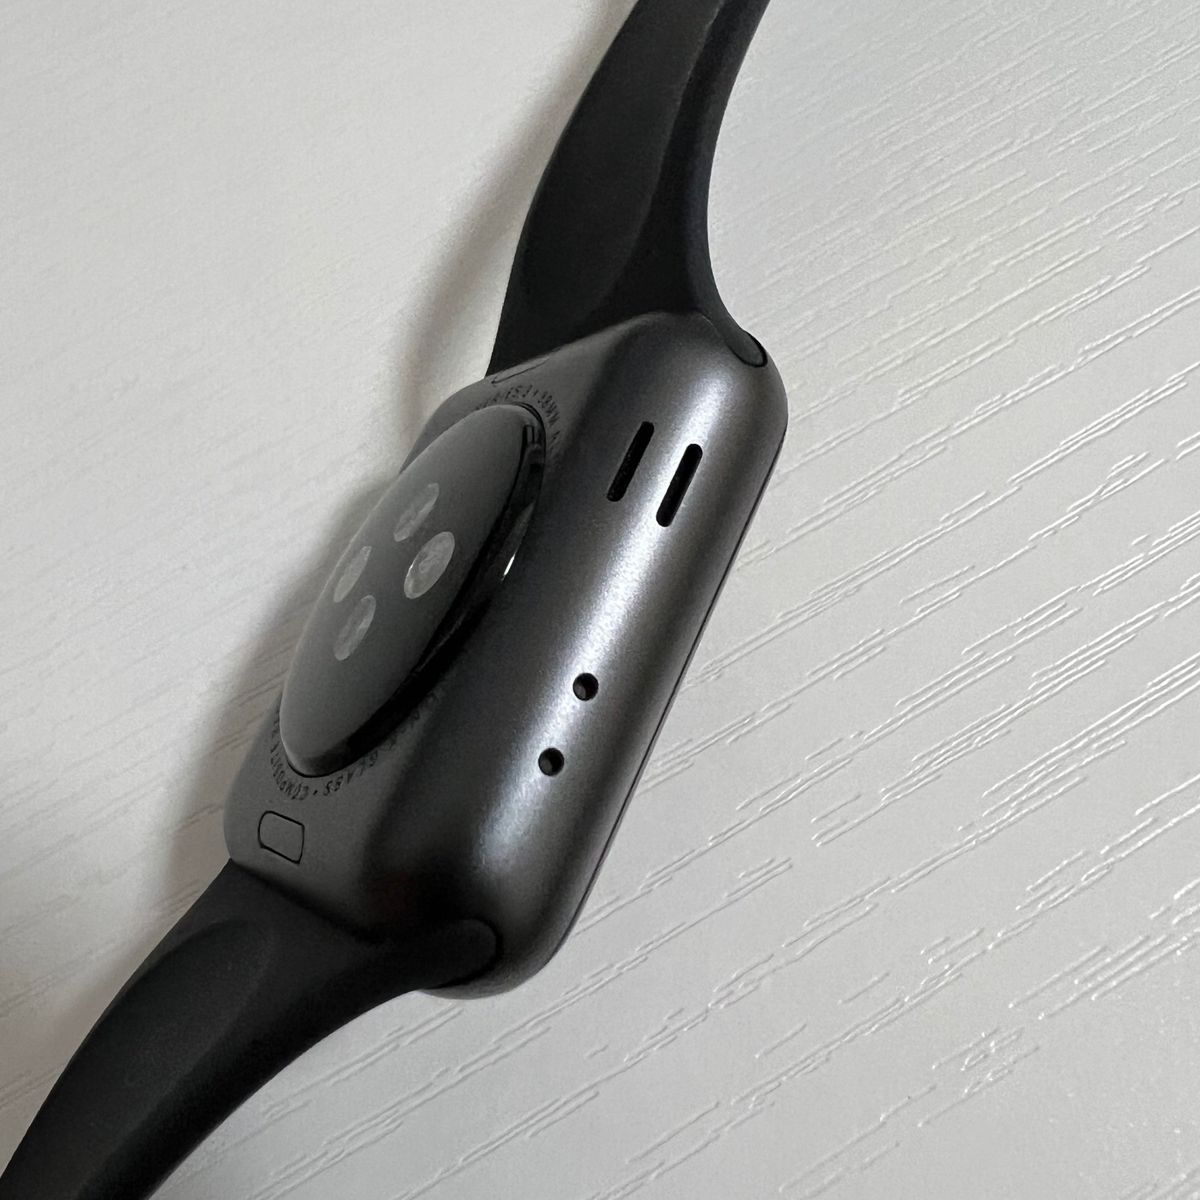 Apple Watch series3 GPSモデル 38mm スペースグレイアルミニウムケースとブラックスポーツバンド 